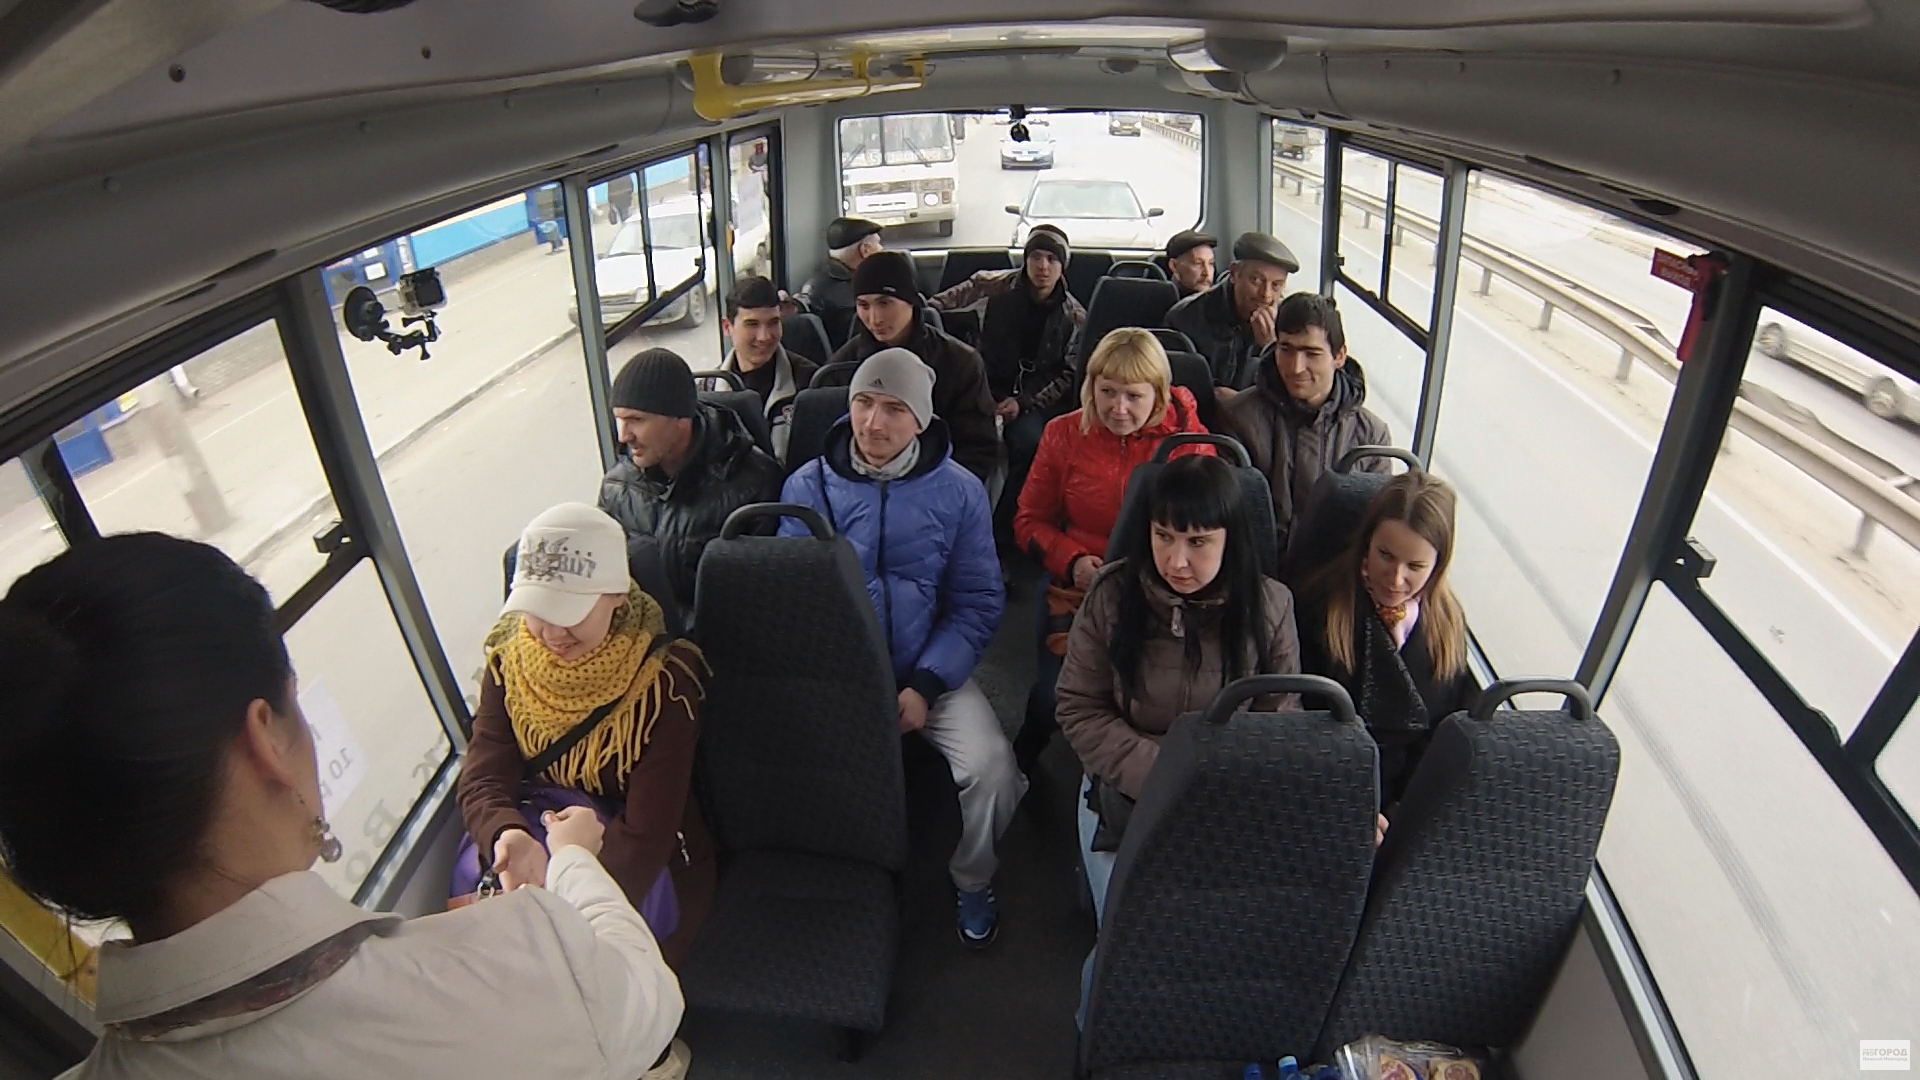 Фото автобуса изнутри с пассажирами